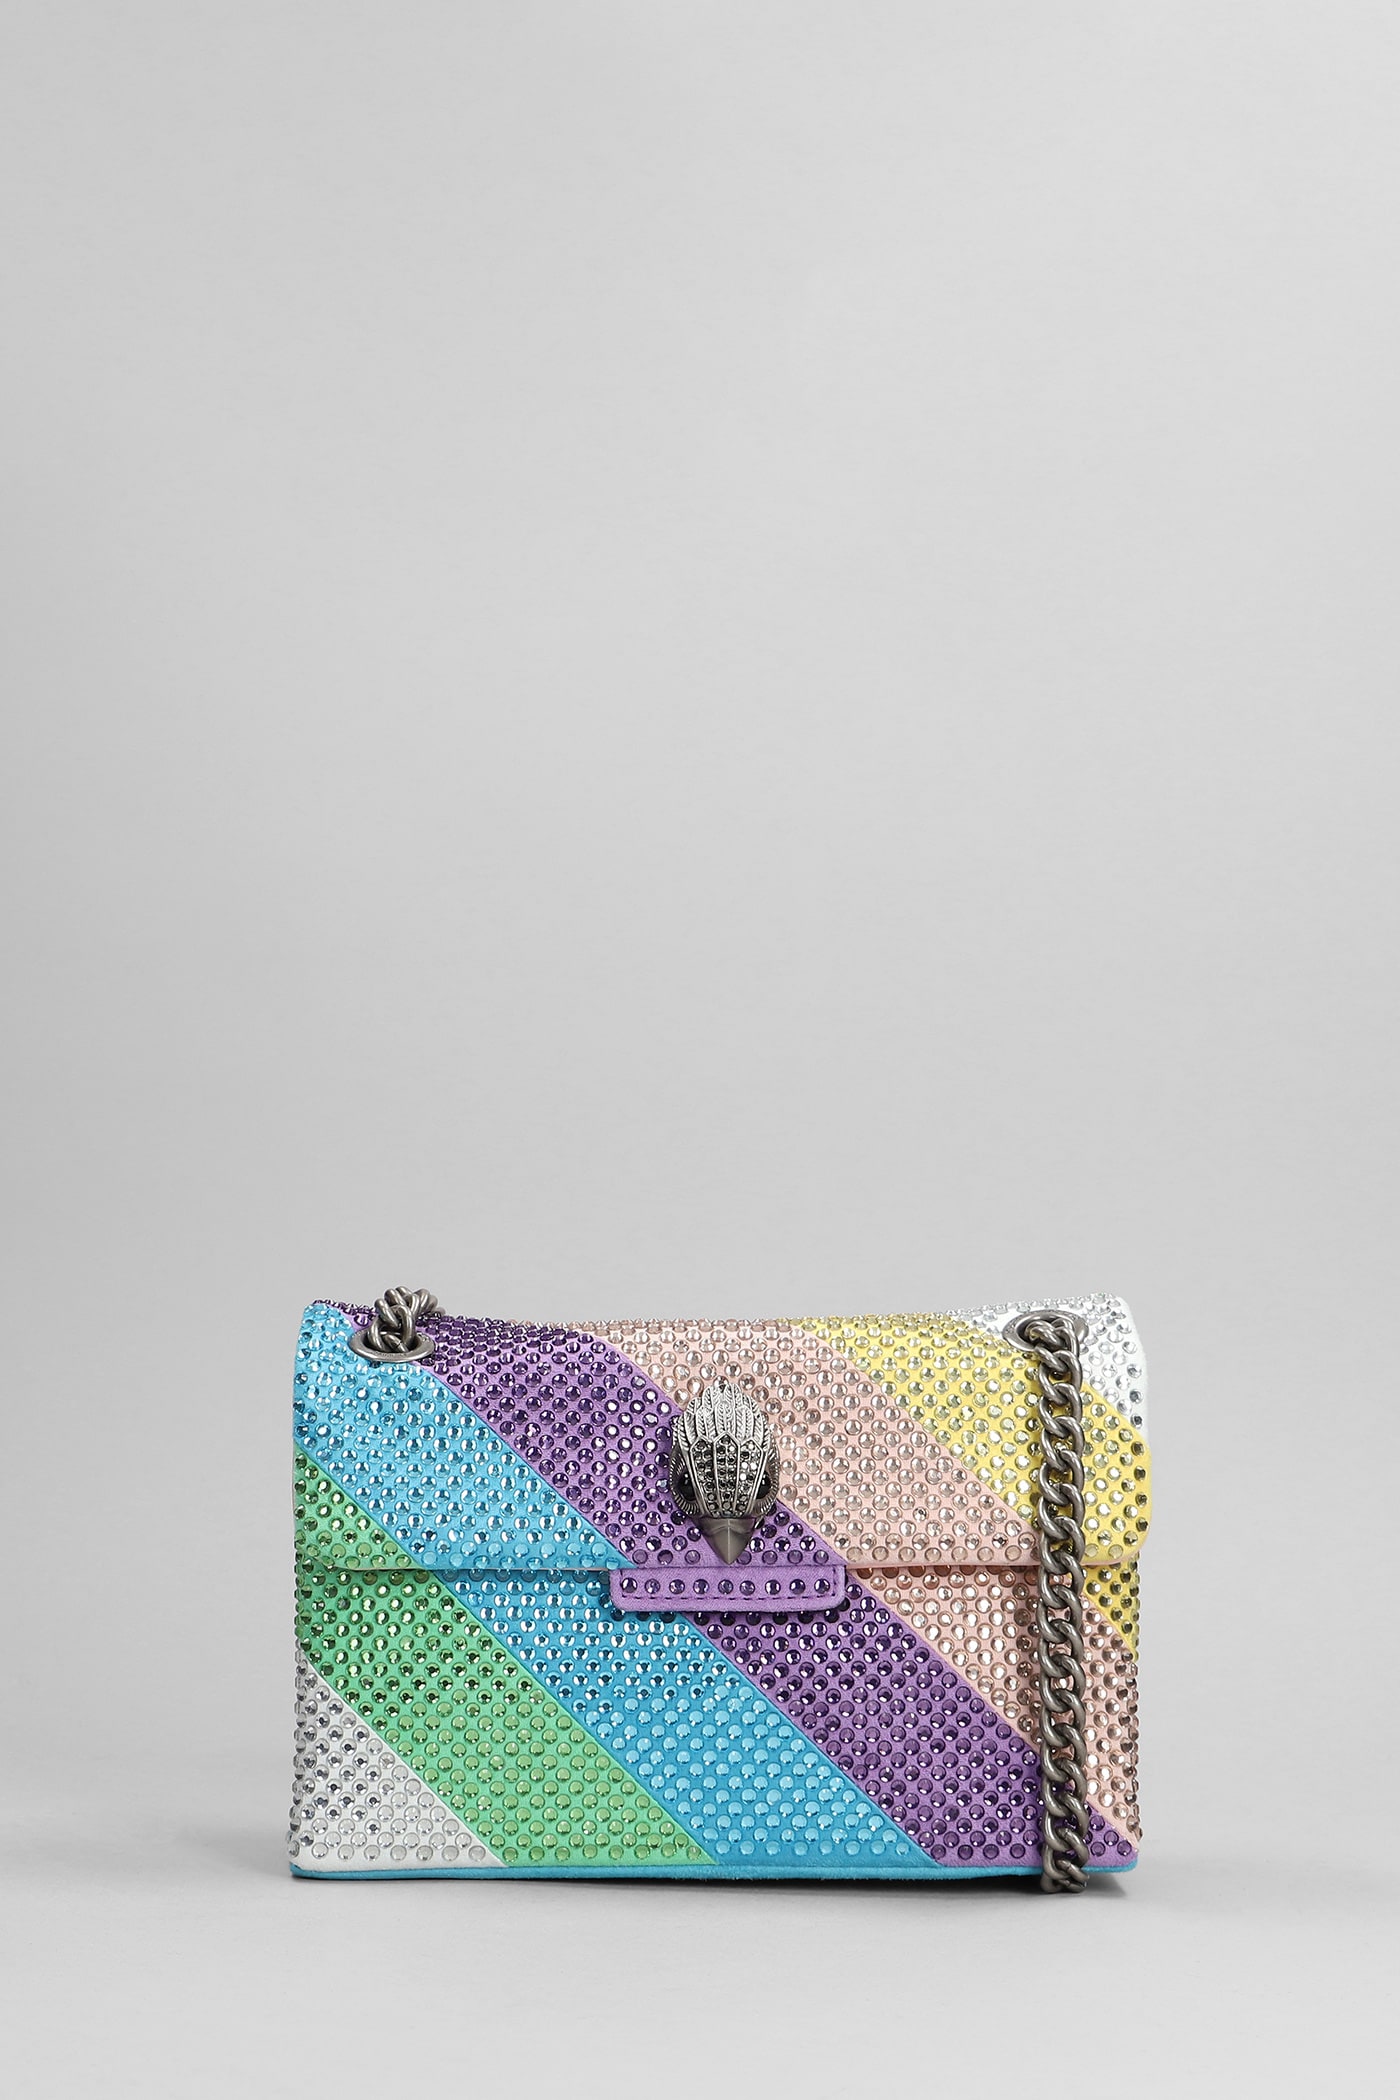 Kurt Geiger Mini Kensington Shoulder Bag In Multicolor Leather